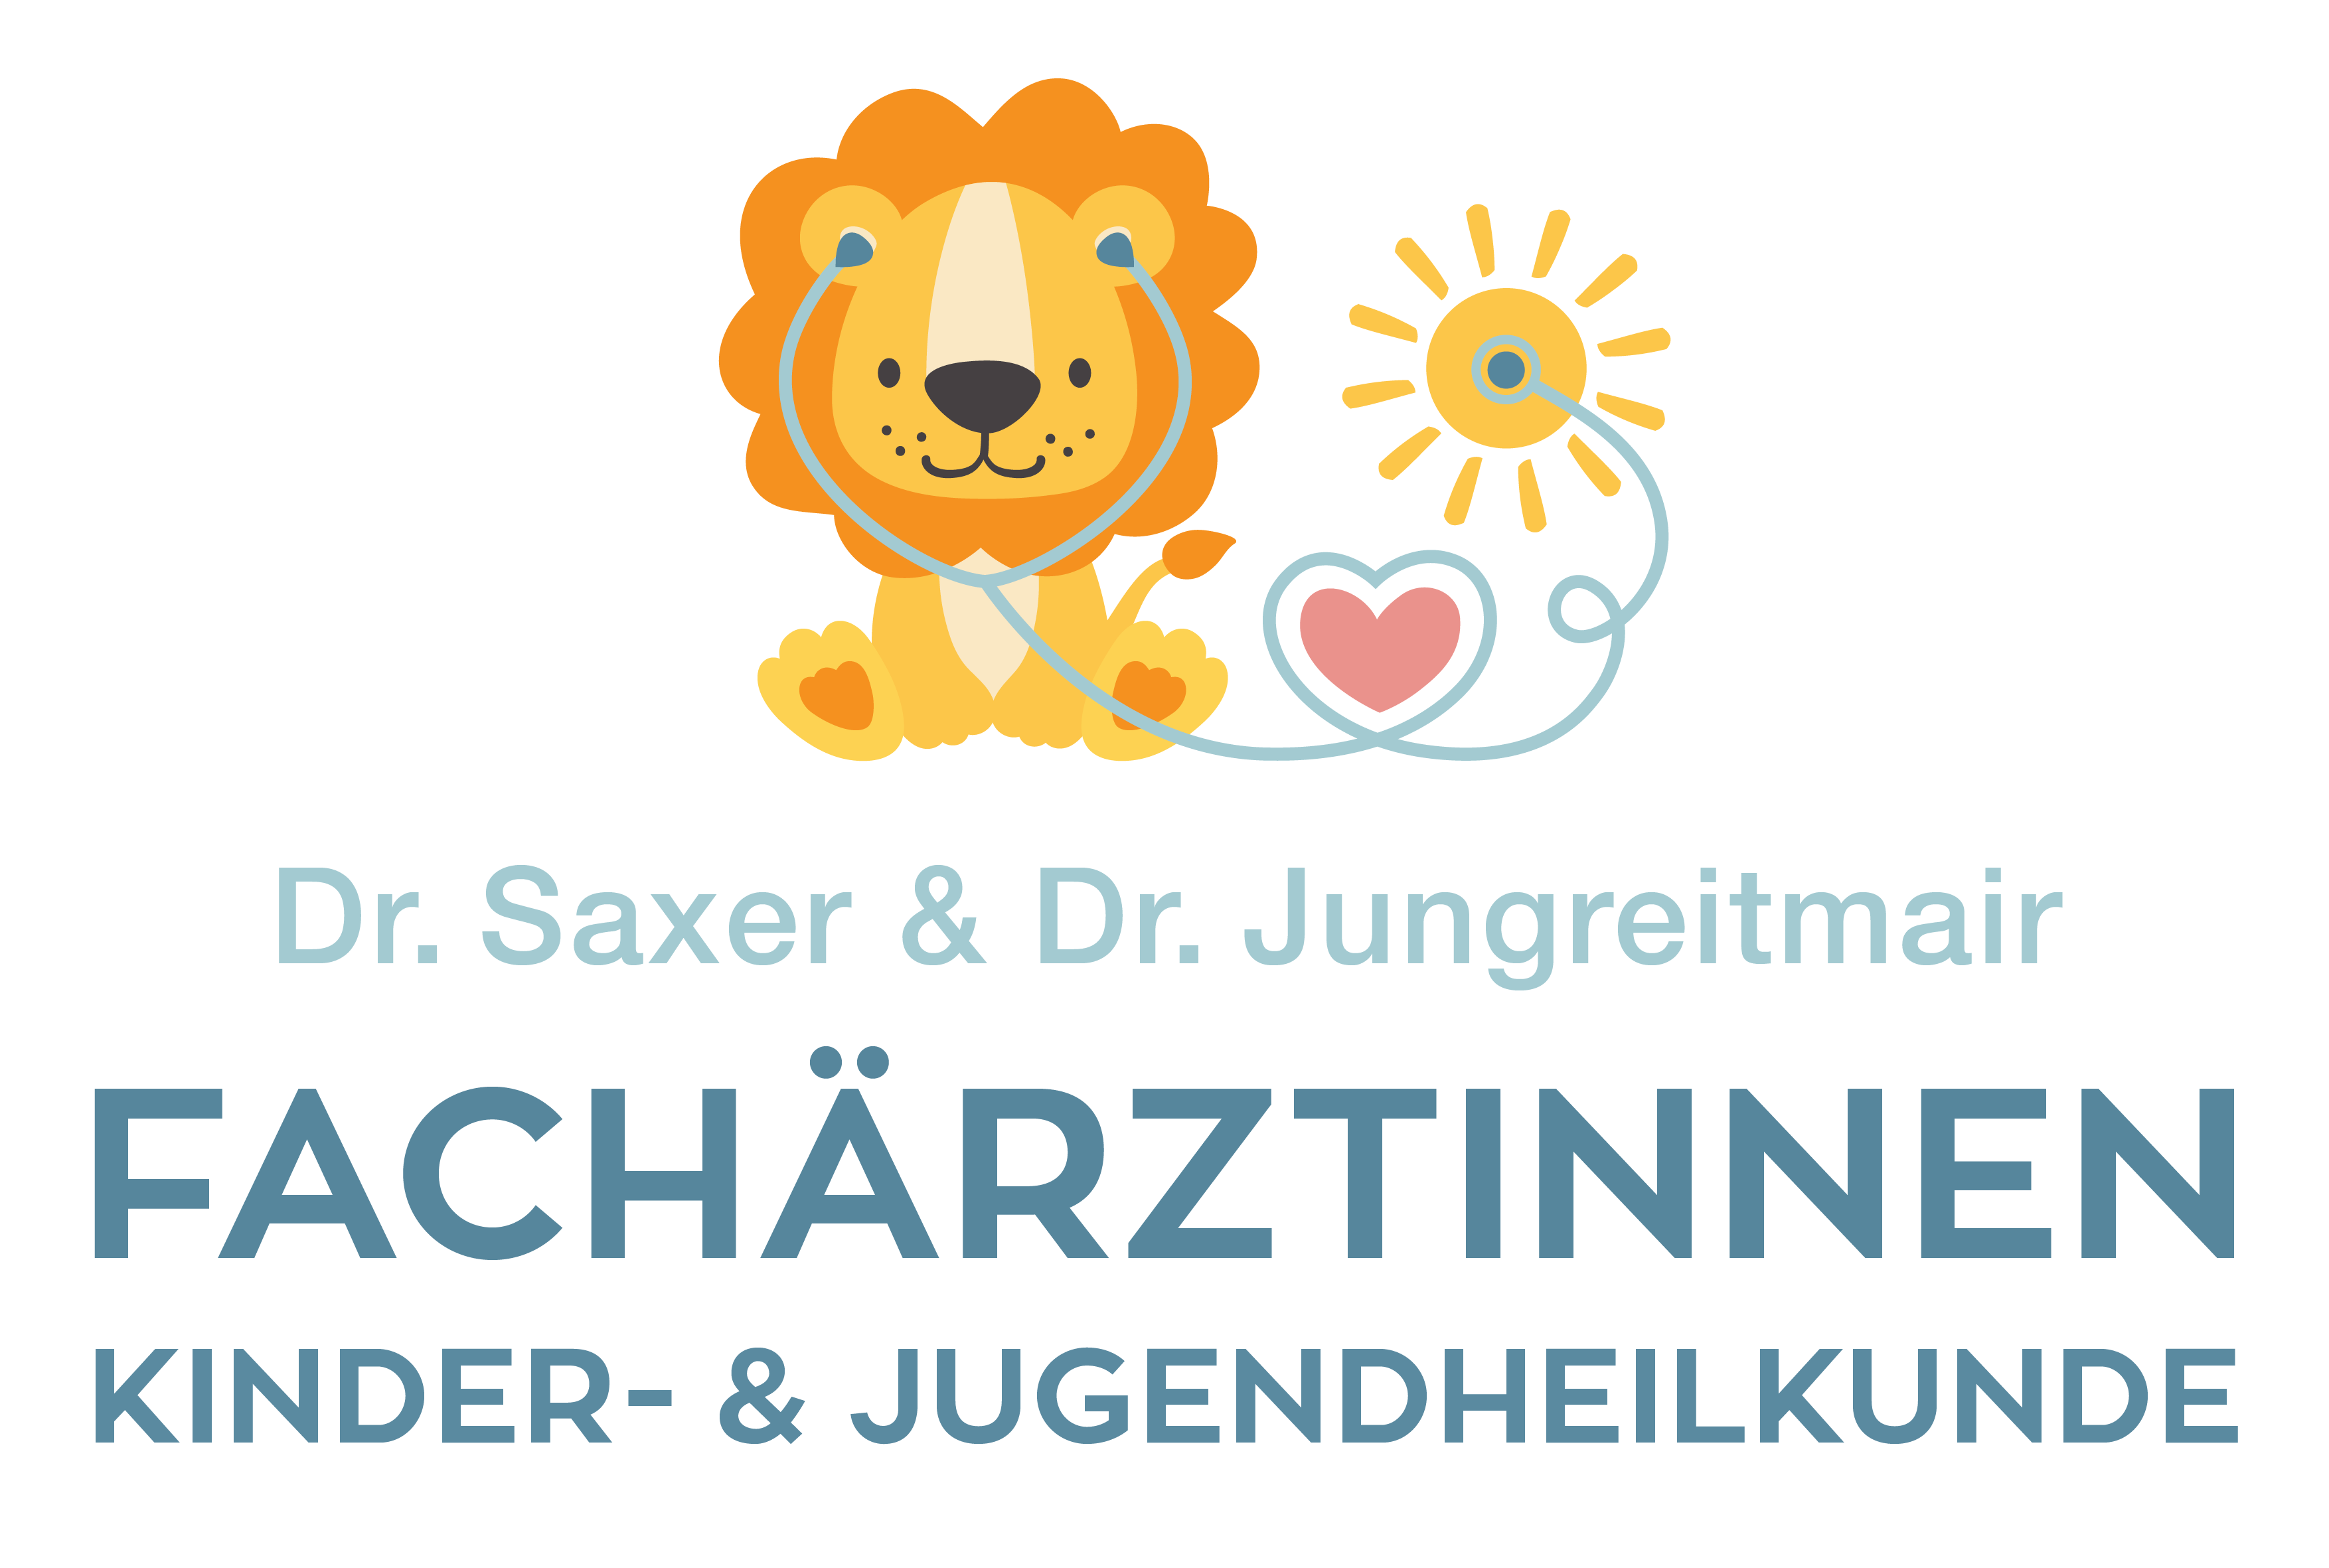 Kinderfachärztinnen Dr. Saxer und Dr. Jungreitmair